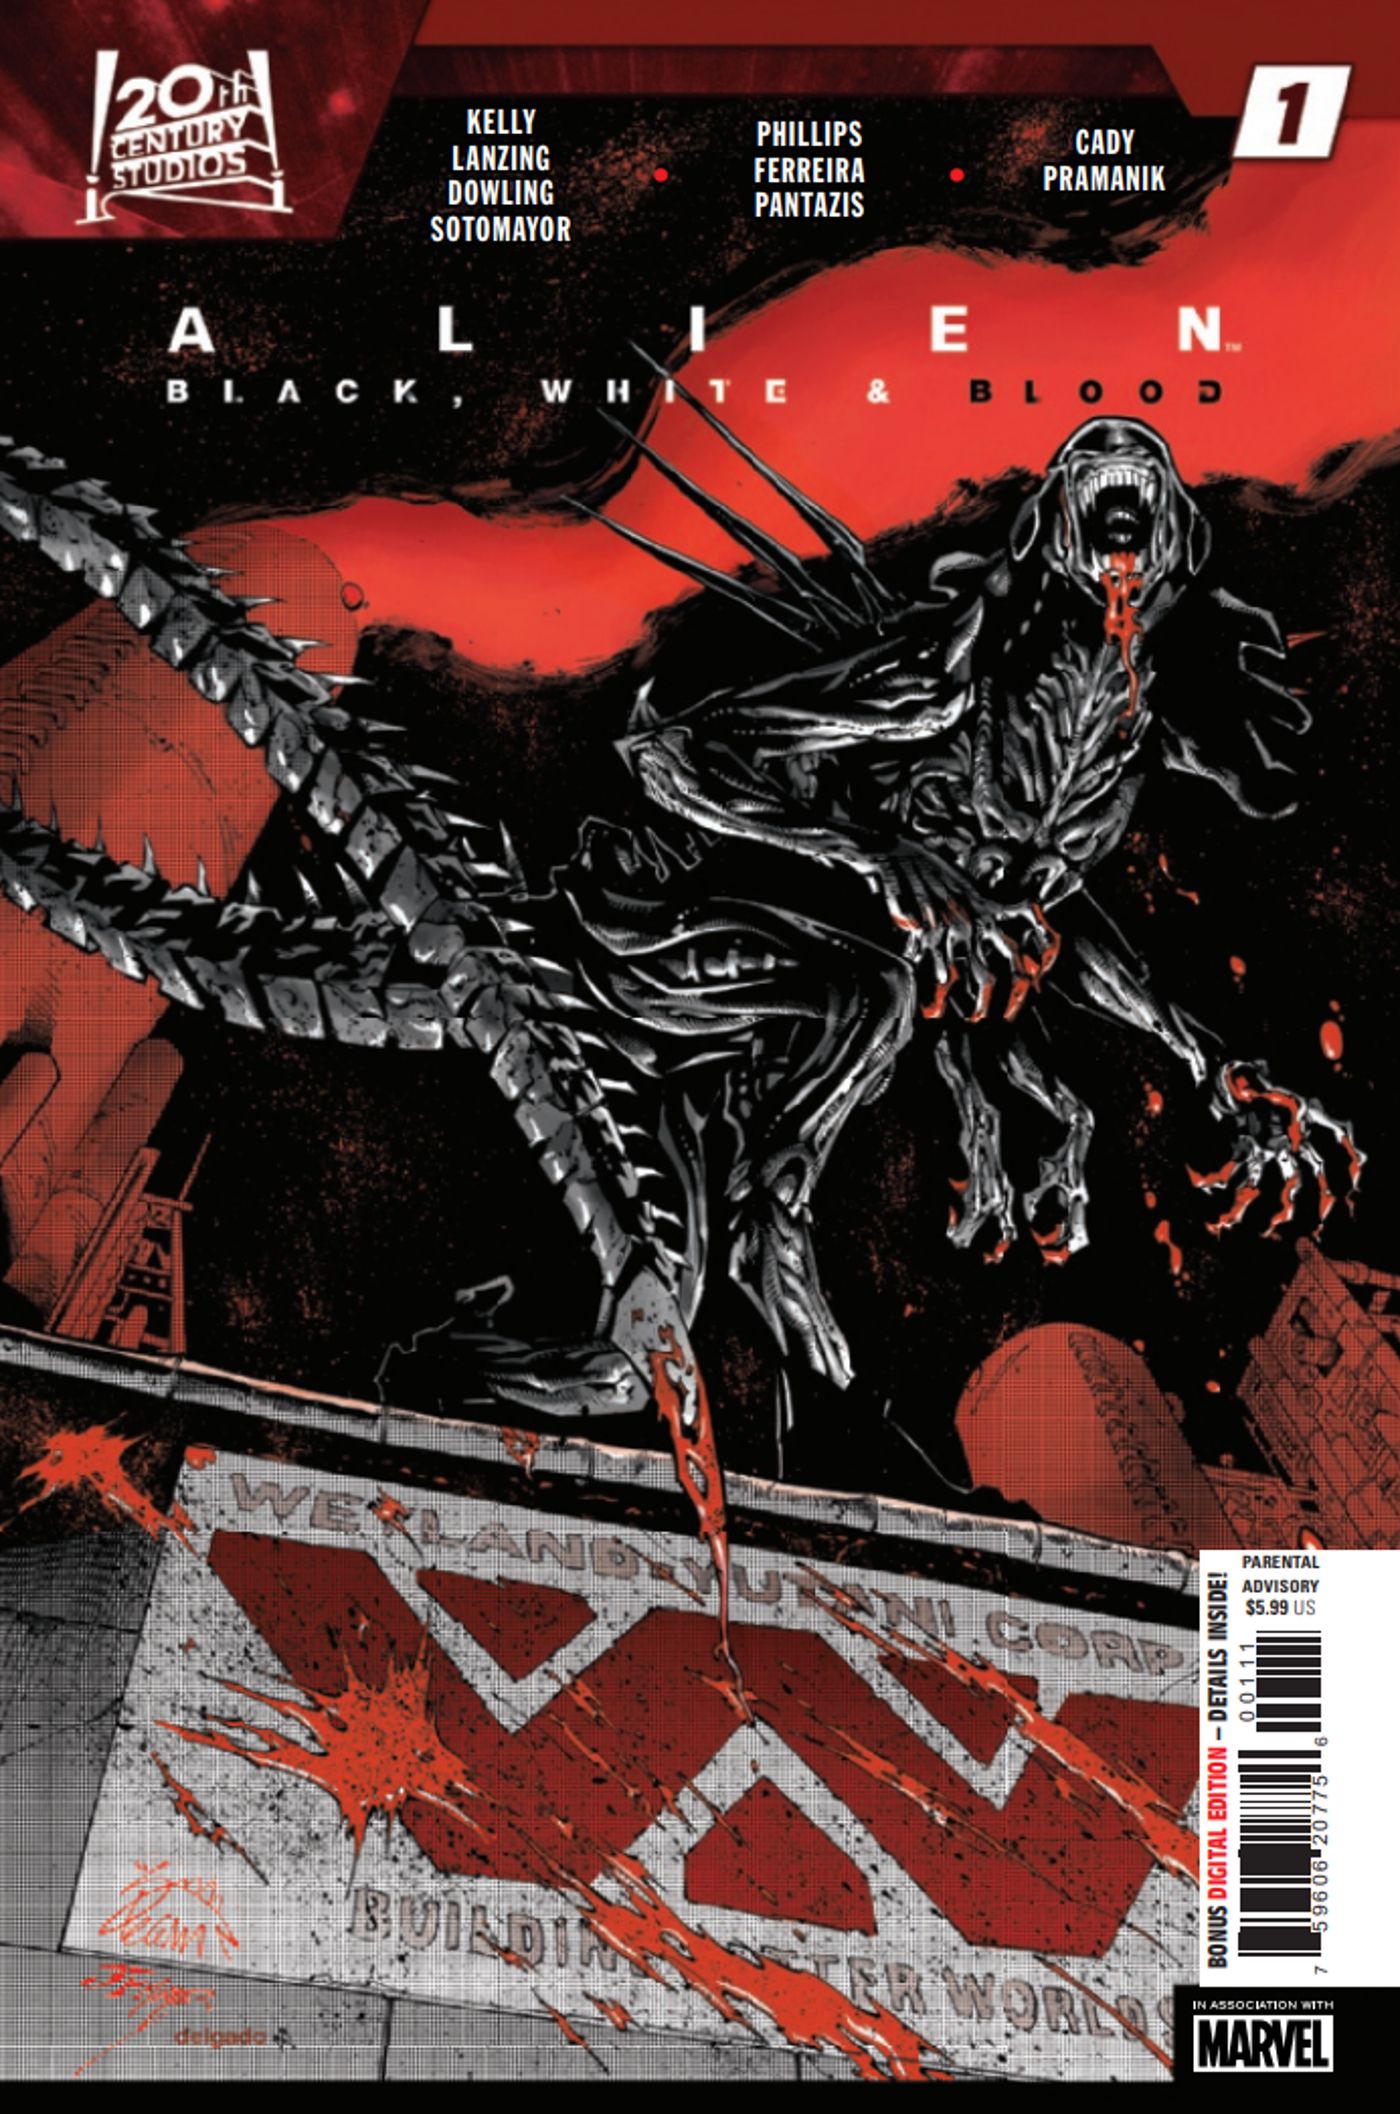 Alien Black, White, & Blood #1 Cover Art